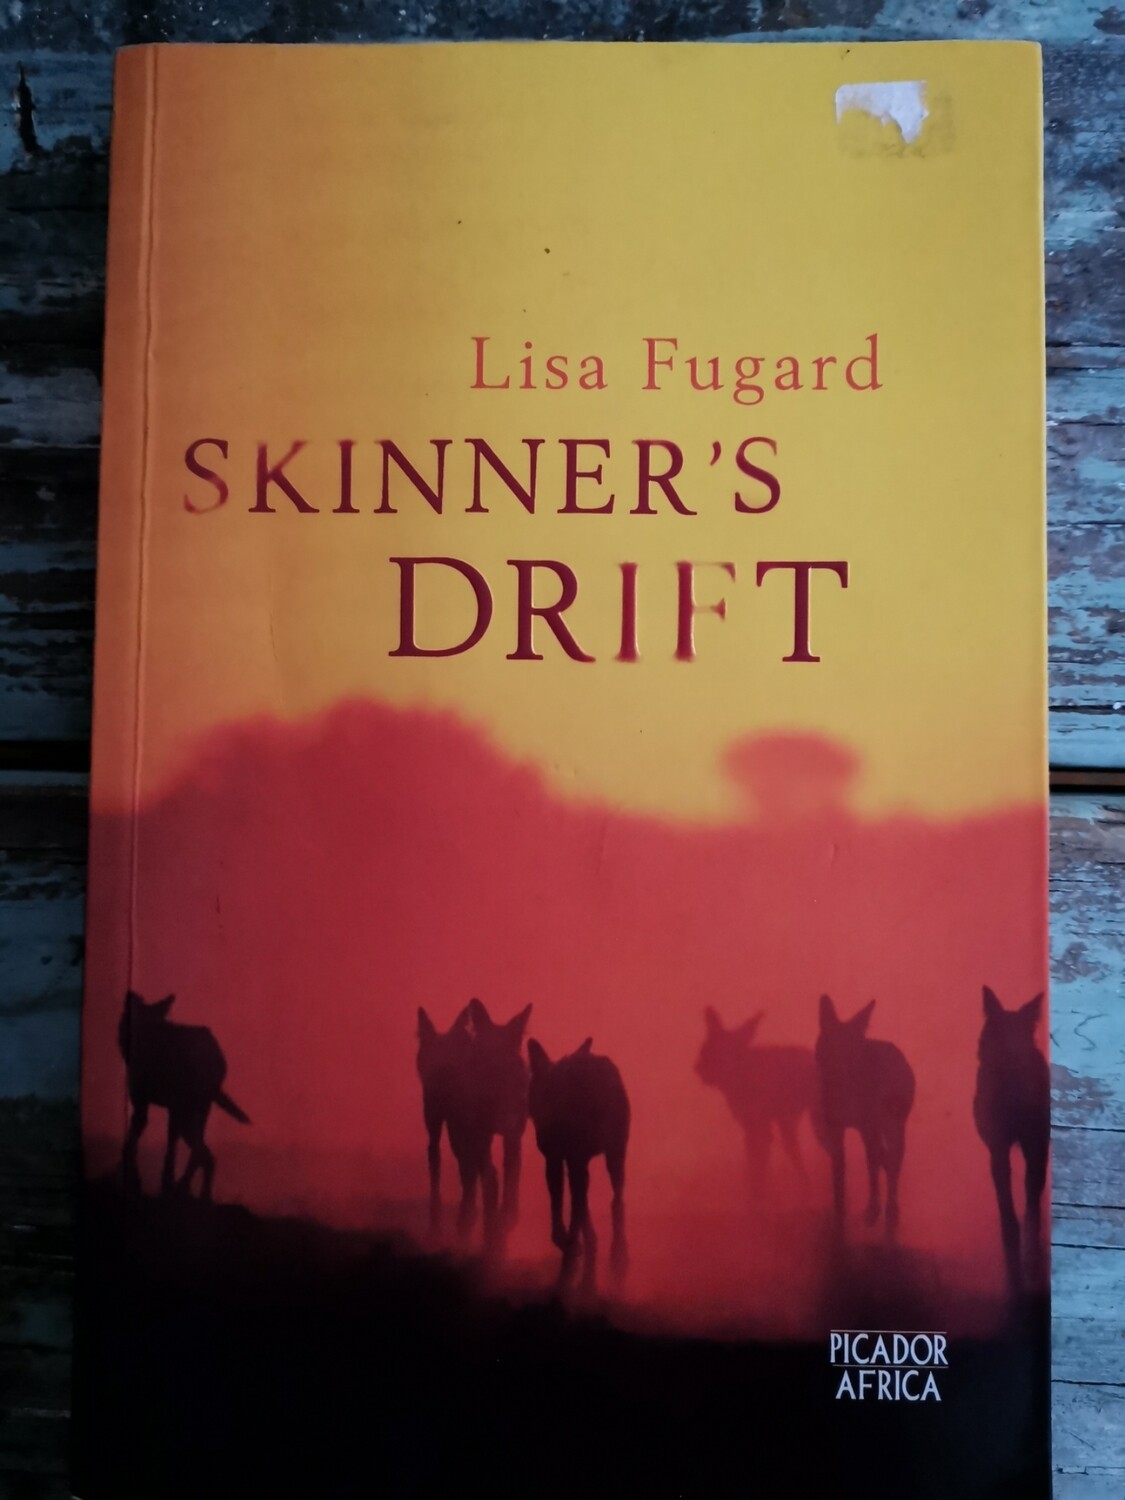 Sinners drift, Lisa Fugard